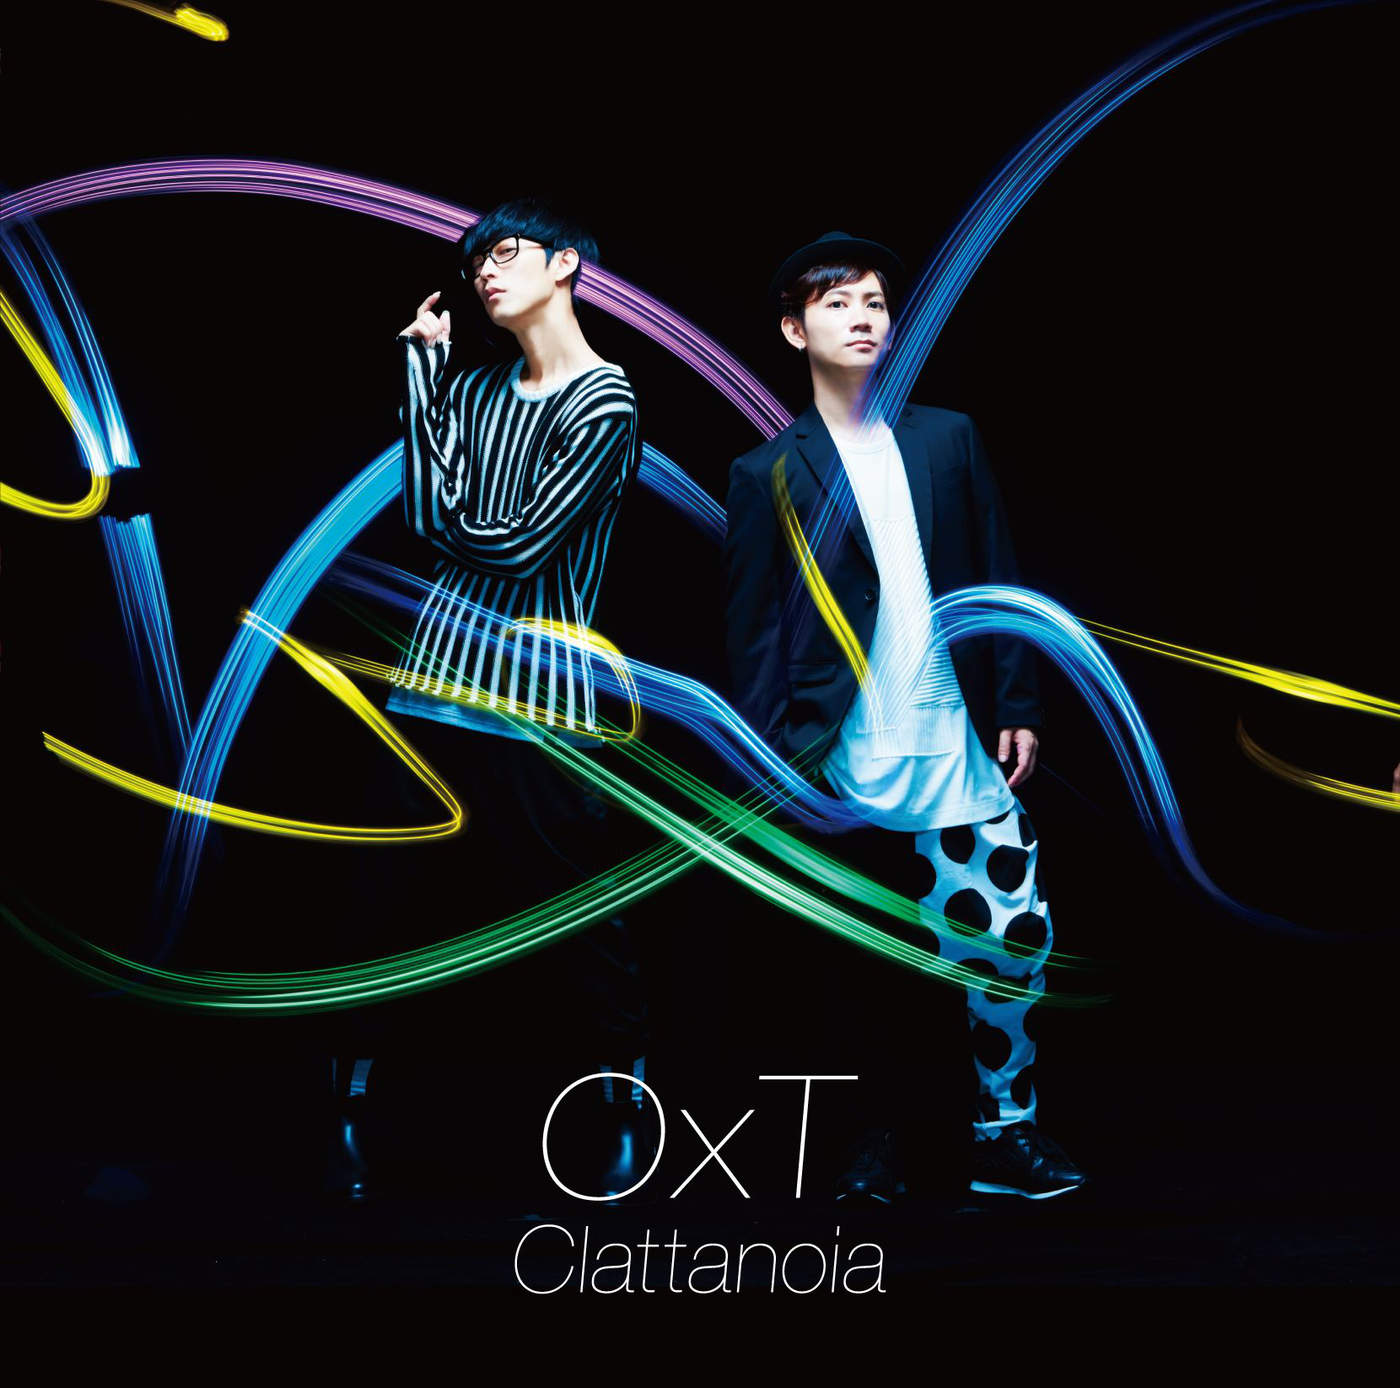 OxT - Clattanoia